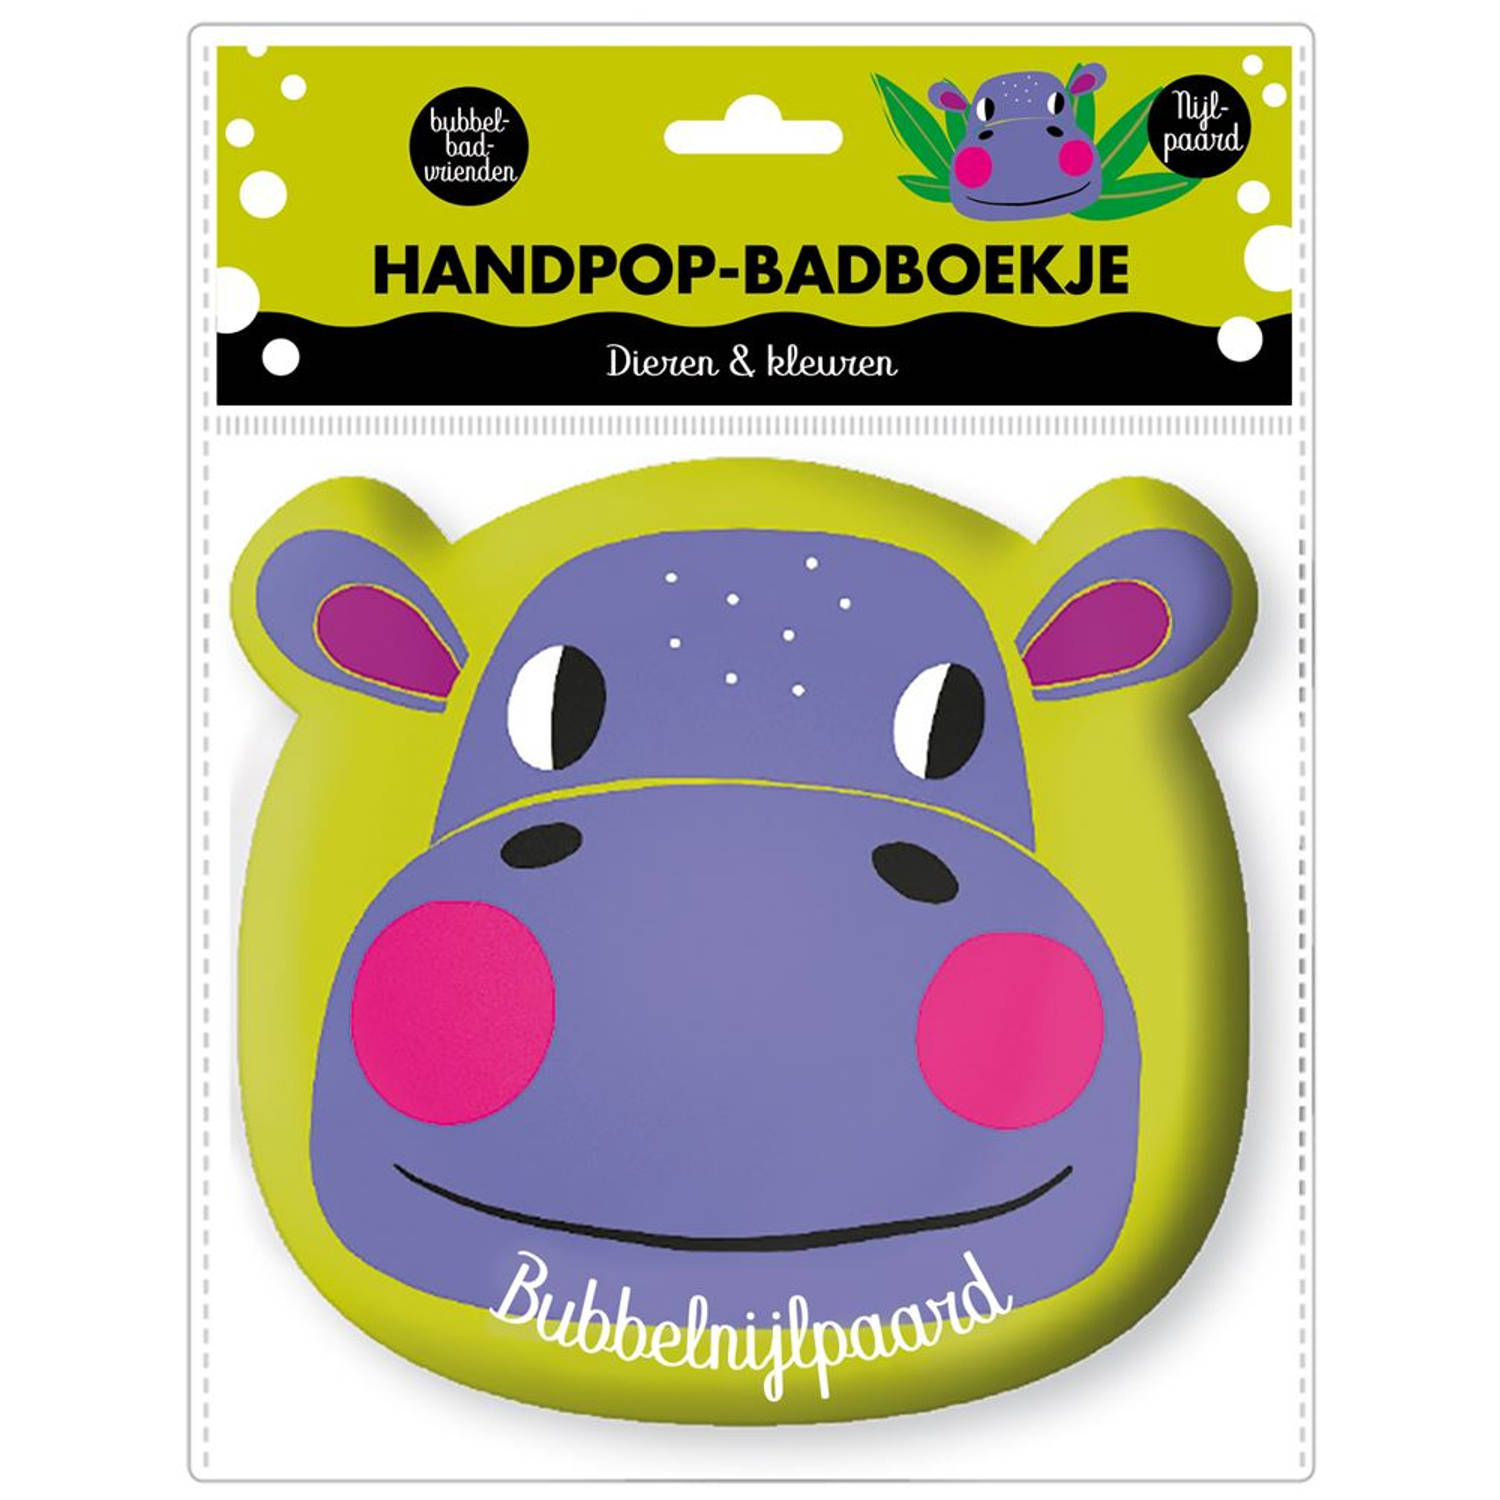 Handpop badboekje Nijlpaard. Dieren en kleuren. 0+